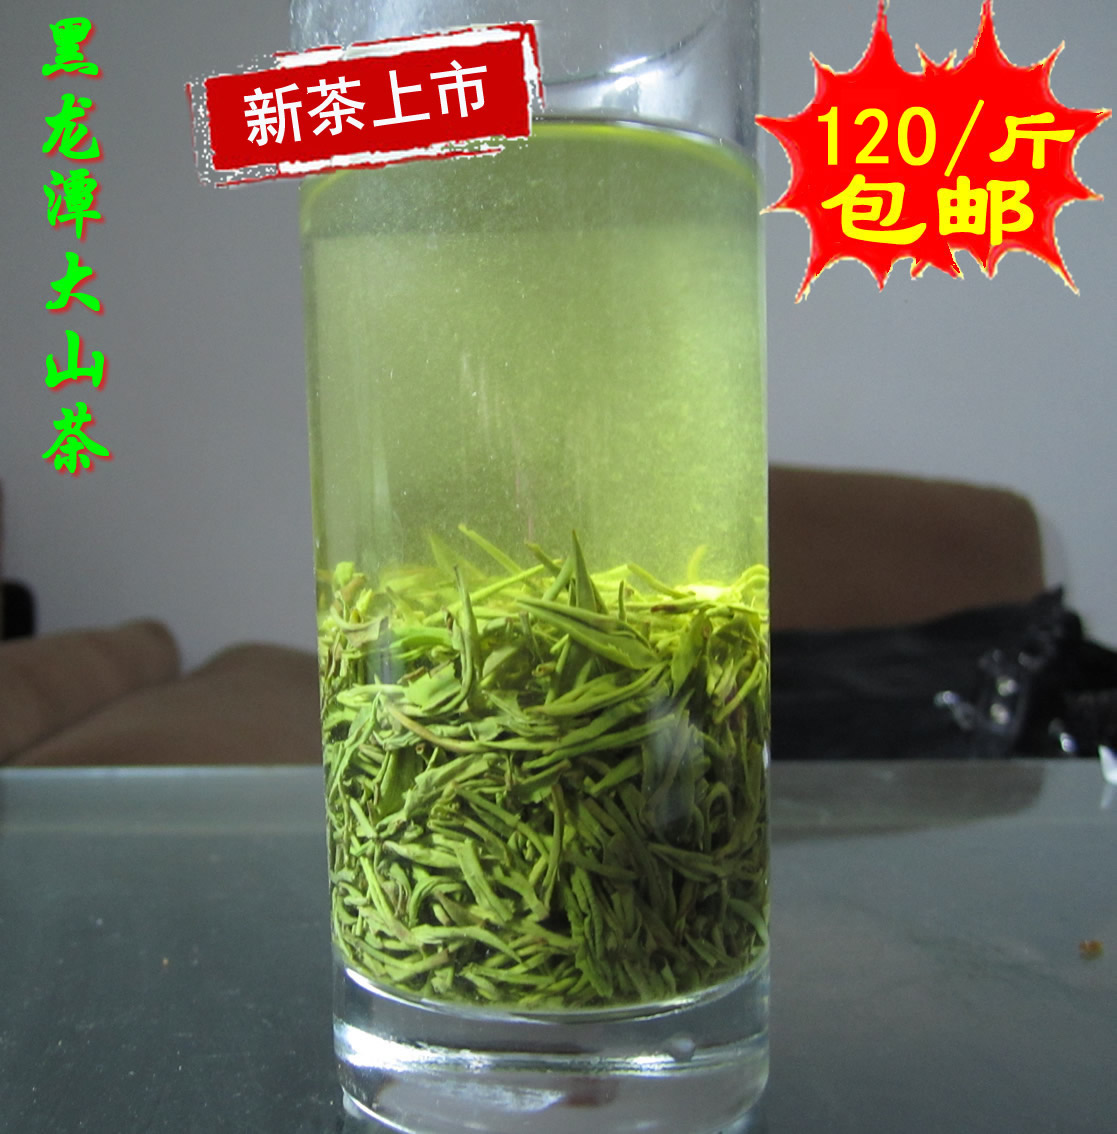 [上市]信阳毛尖 龙潭茶2016新茶叶优质雨前一级绿茶500g 自产自销